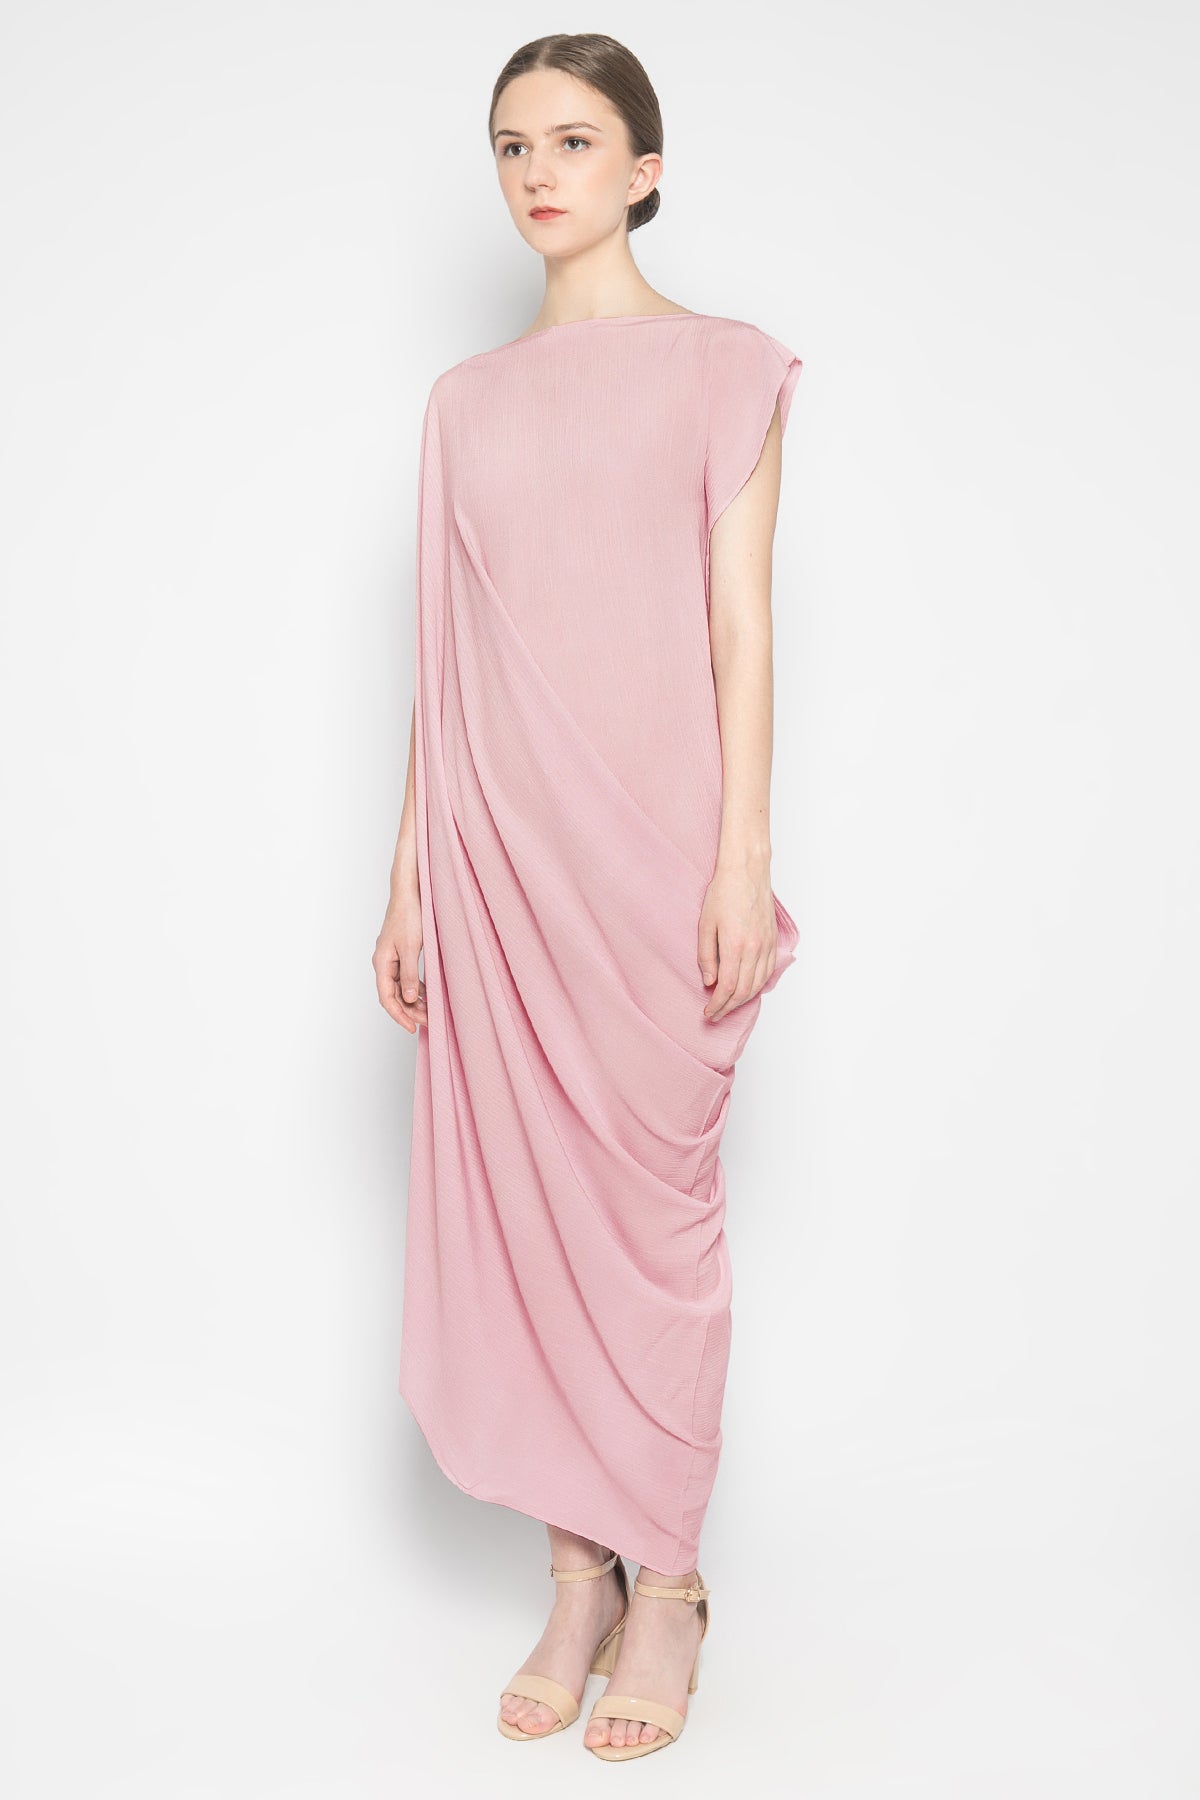 Venus Dress in Pink